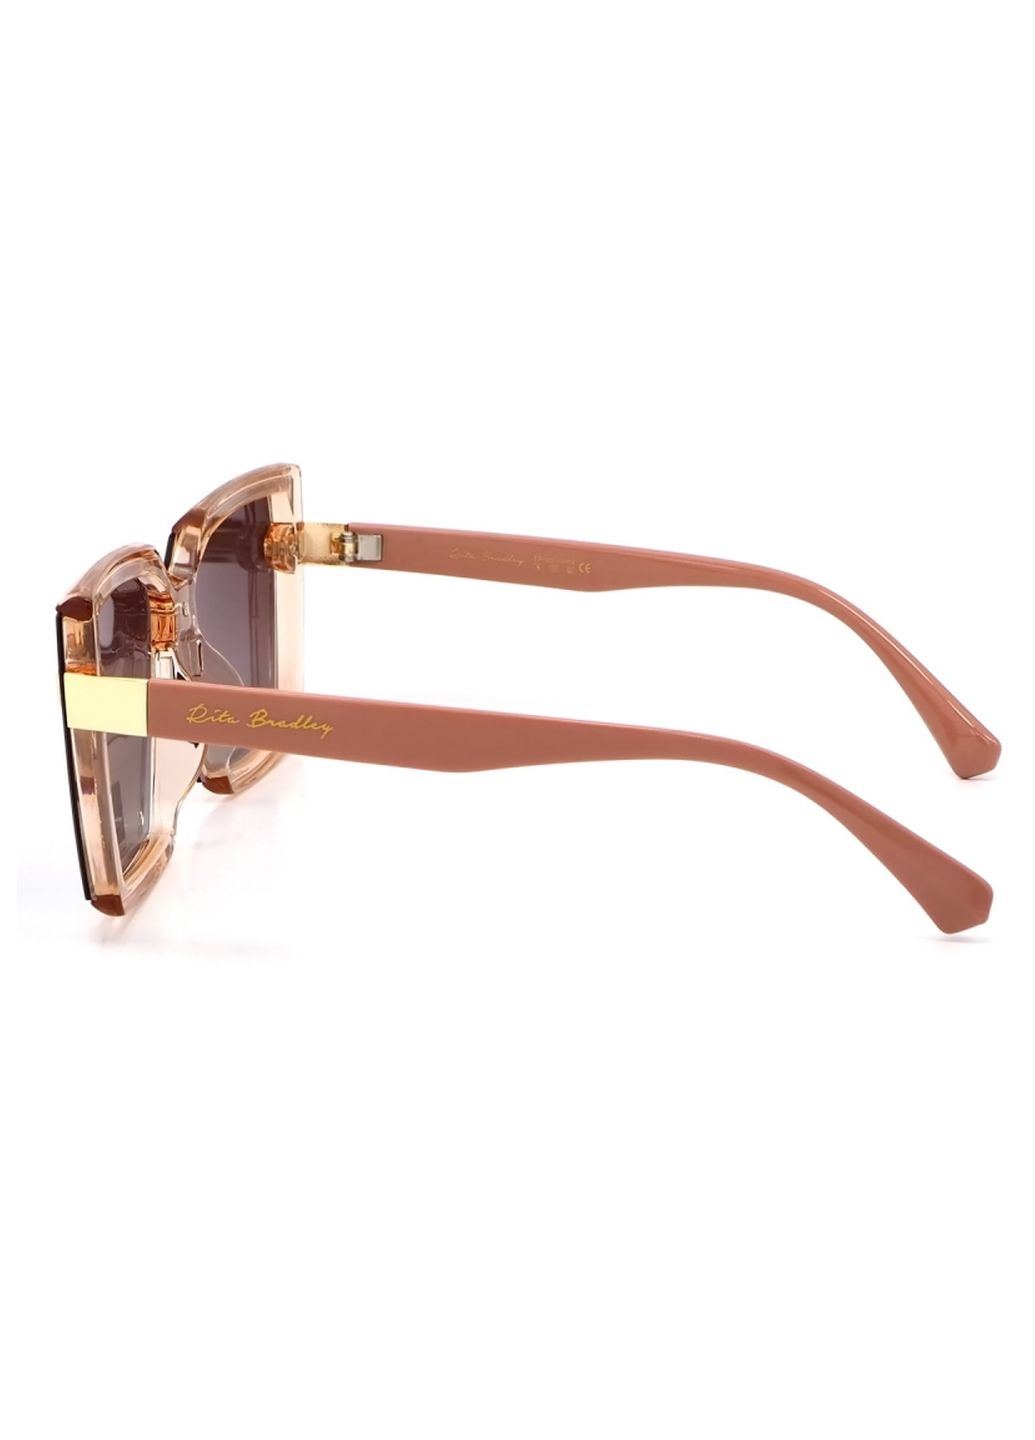 Купить Женские солнцезащитные очки Rita Bradley с поляризацией RB723 112041 в интернет-магазине